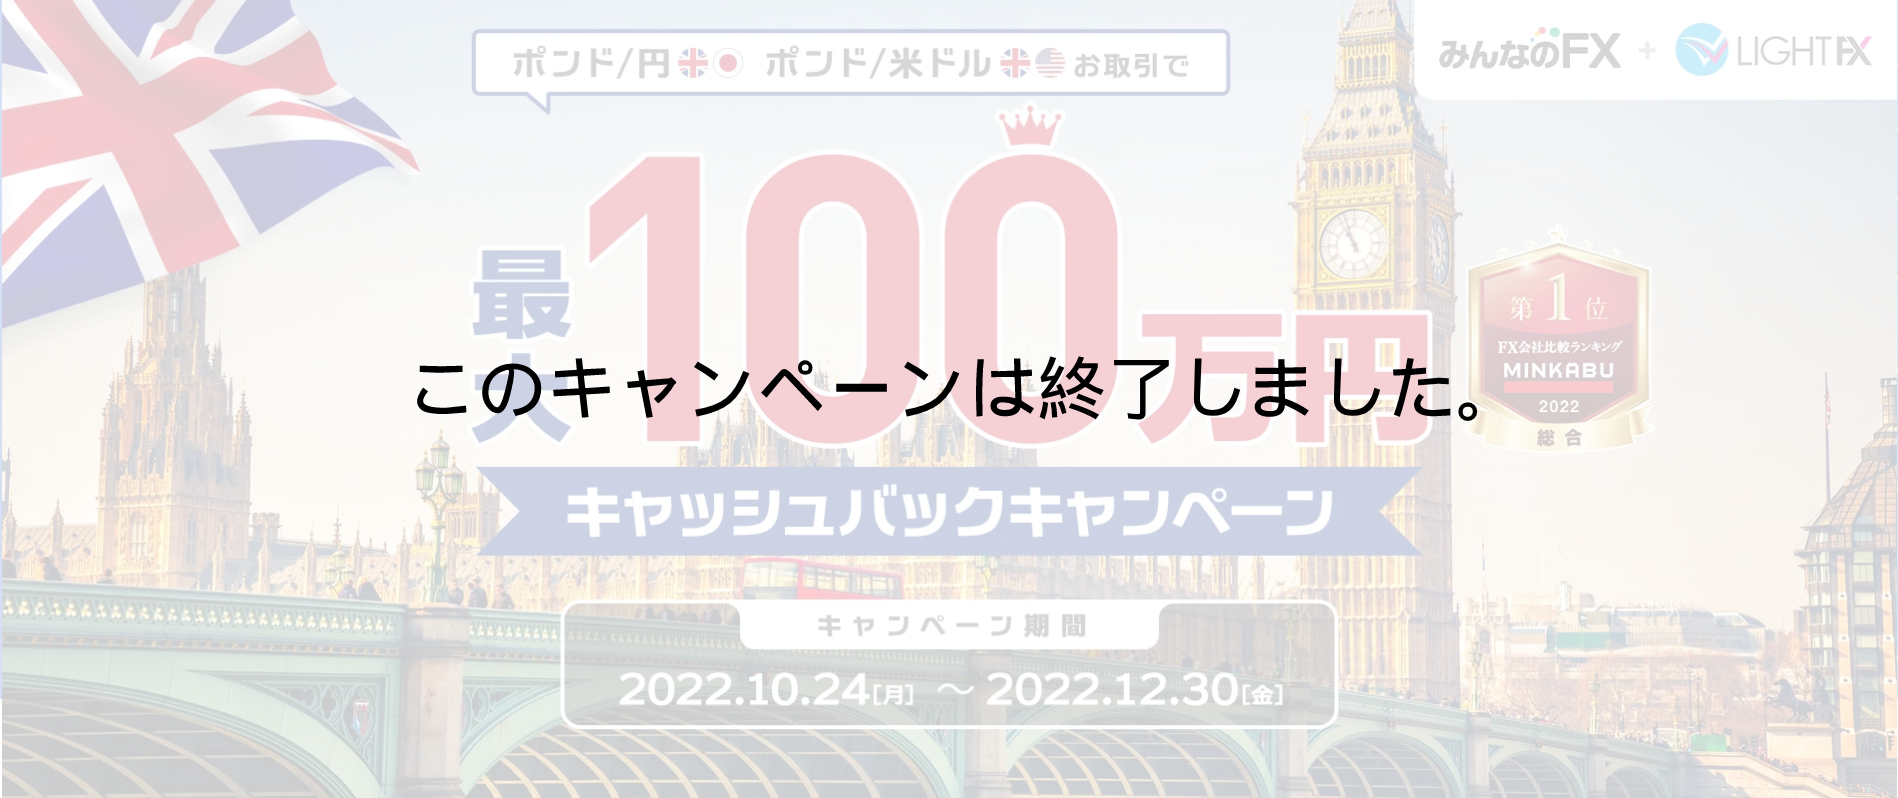 期間限定!!【ポンド円、ポンドドル】最大100万円キャッシュバックキャンペーン